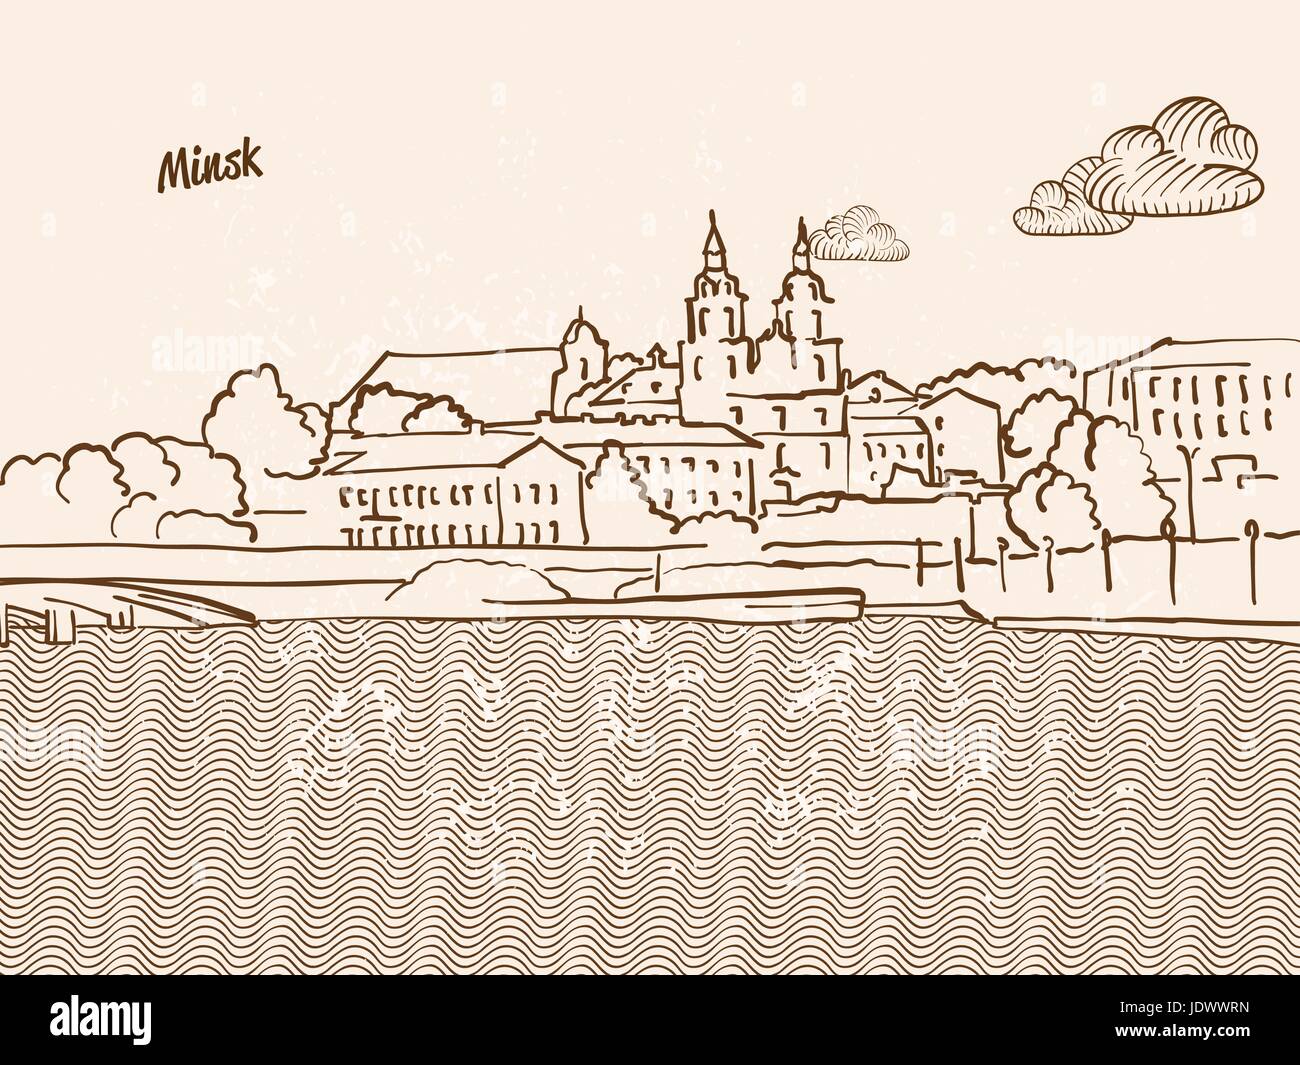 Minsk, Belarus, Grußkarte, Hand gezeichnete Bild, berühmten europäischen Hauptstadt, Vintage-Stil, Vektor-Illustration Stock Vektor